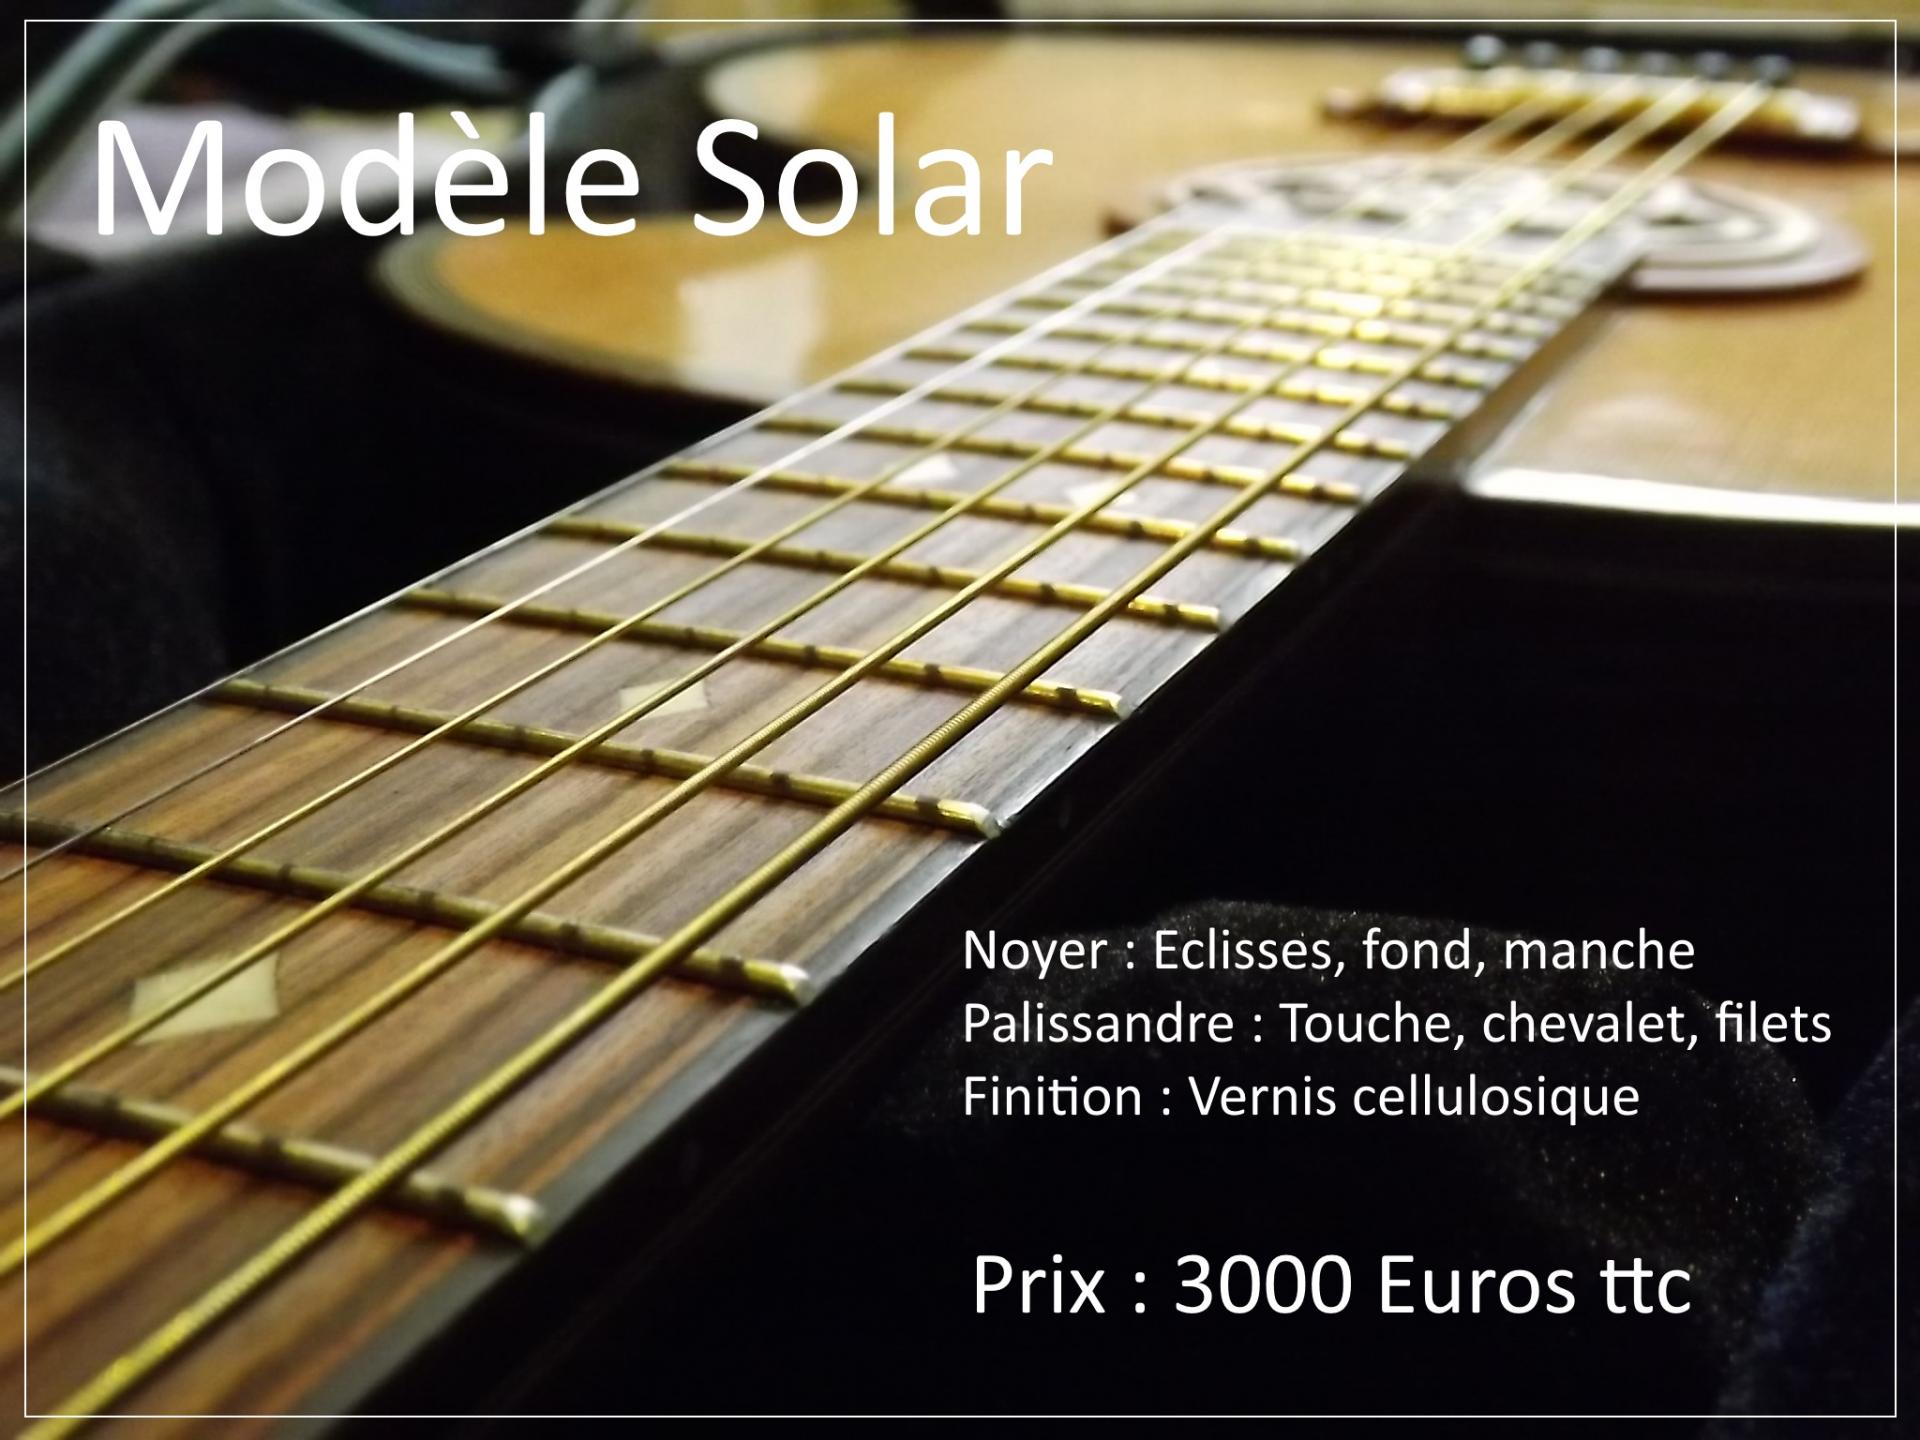 Modele solar